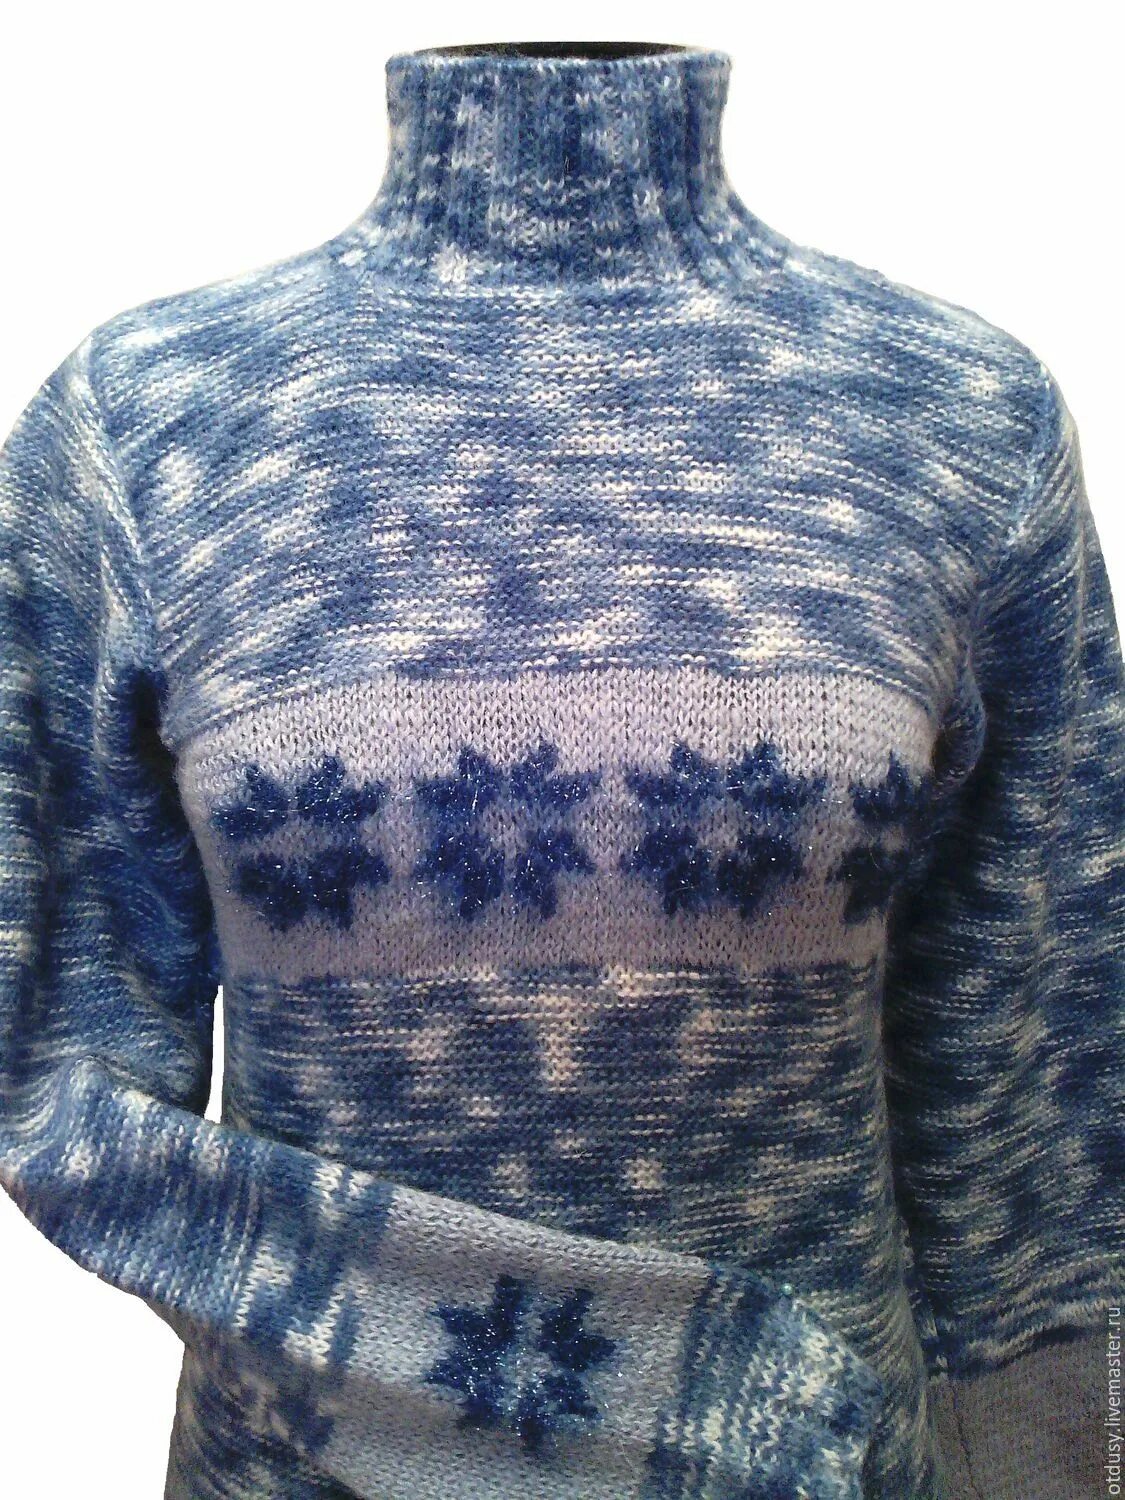 Советский свитер. Ретро свитер. Свитер со снежинками. Свитер ретро женский. В колючем свитере